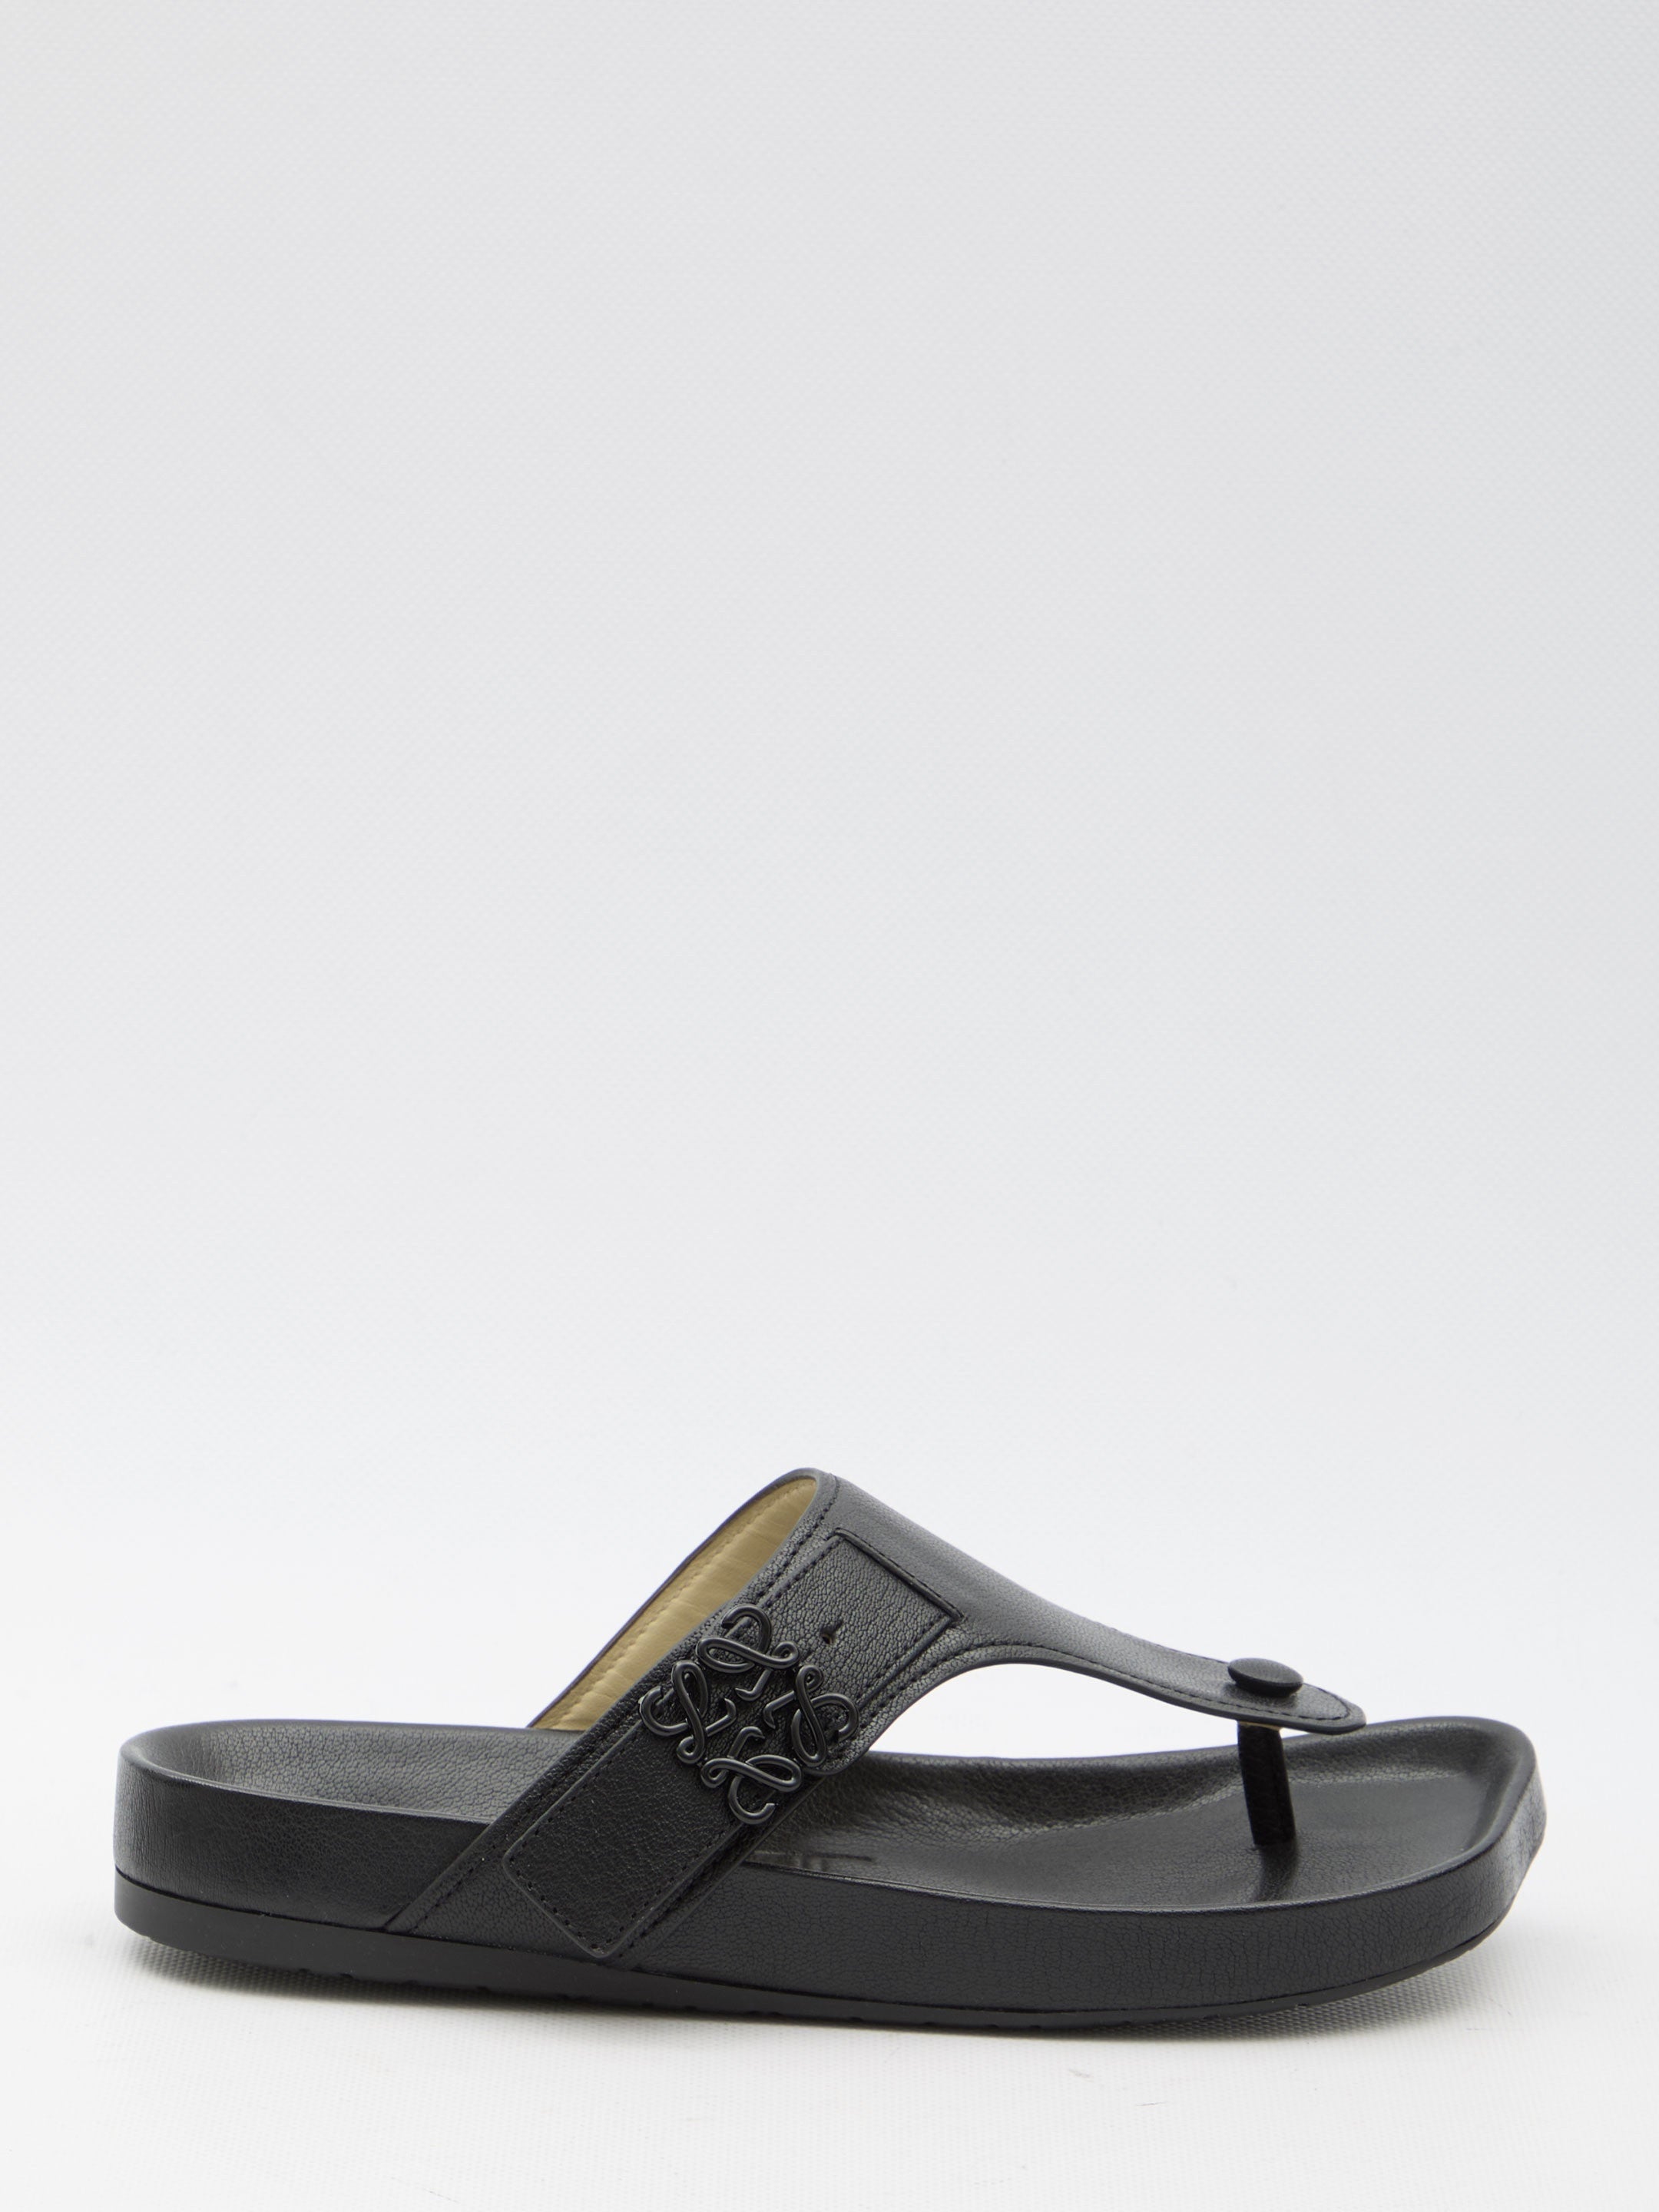 LOEWE-OUTLET-SALE-Ease-sandals-Sandalen-36-BLACK-ARCHIVE-COLLECTION.jpg